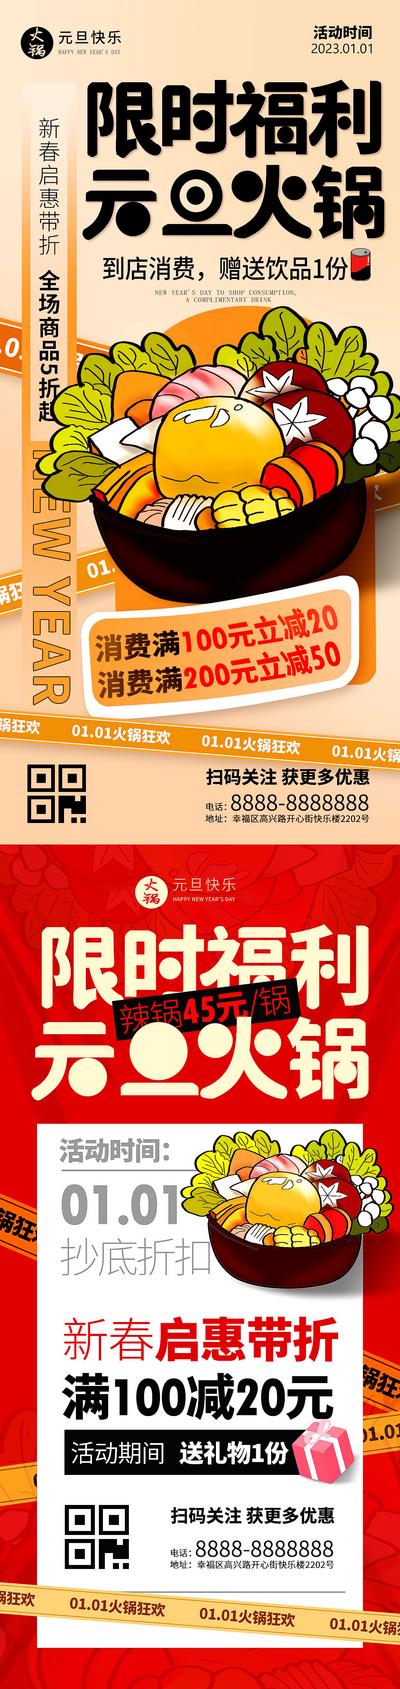 南门网 海报 餐饮 公历节日 元旦 新年 插画 火锅 美食 促销 满减